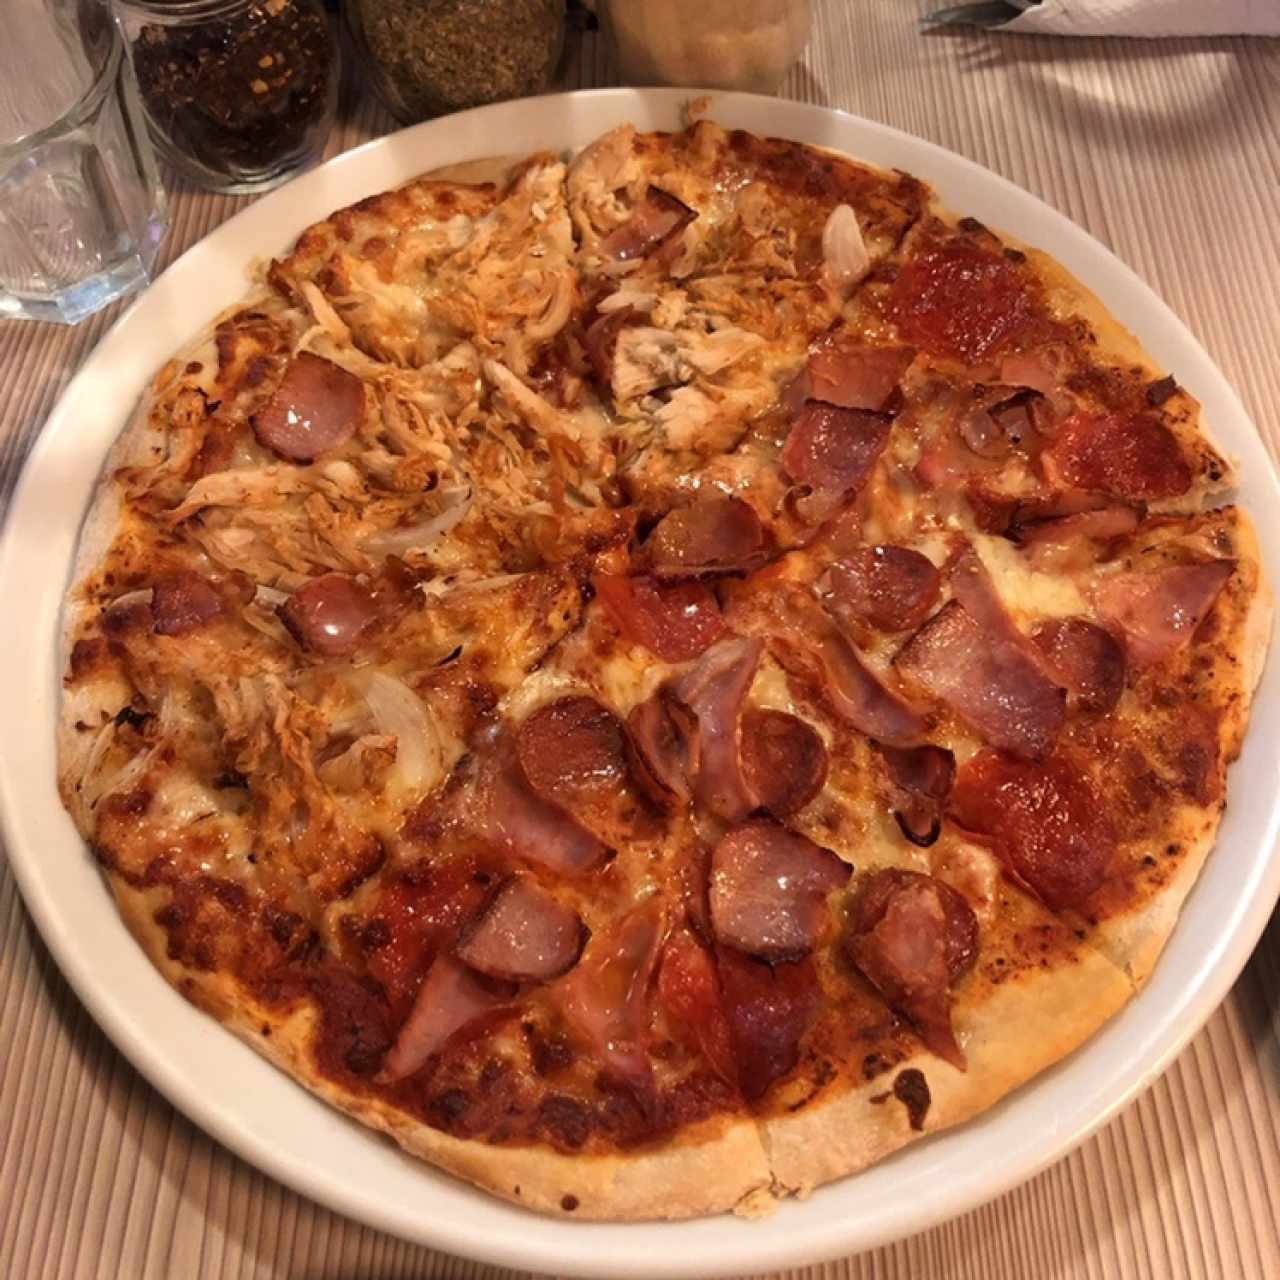 Deliciosa pizza mitad chicho’s y mitad chicken lovers.